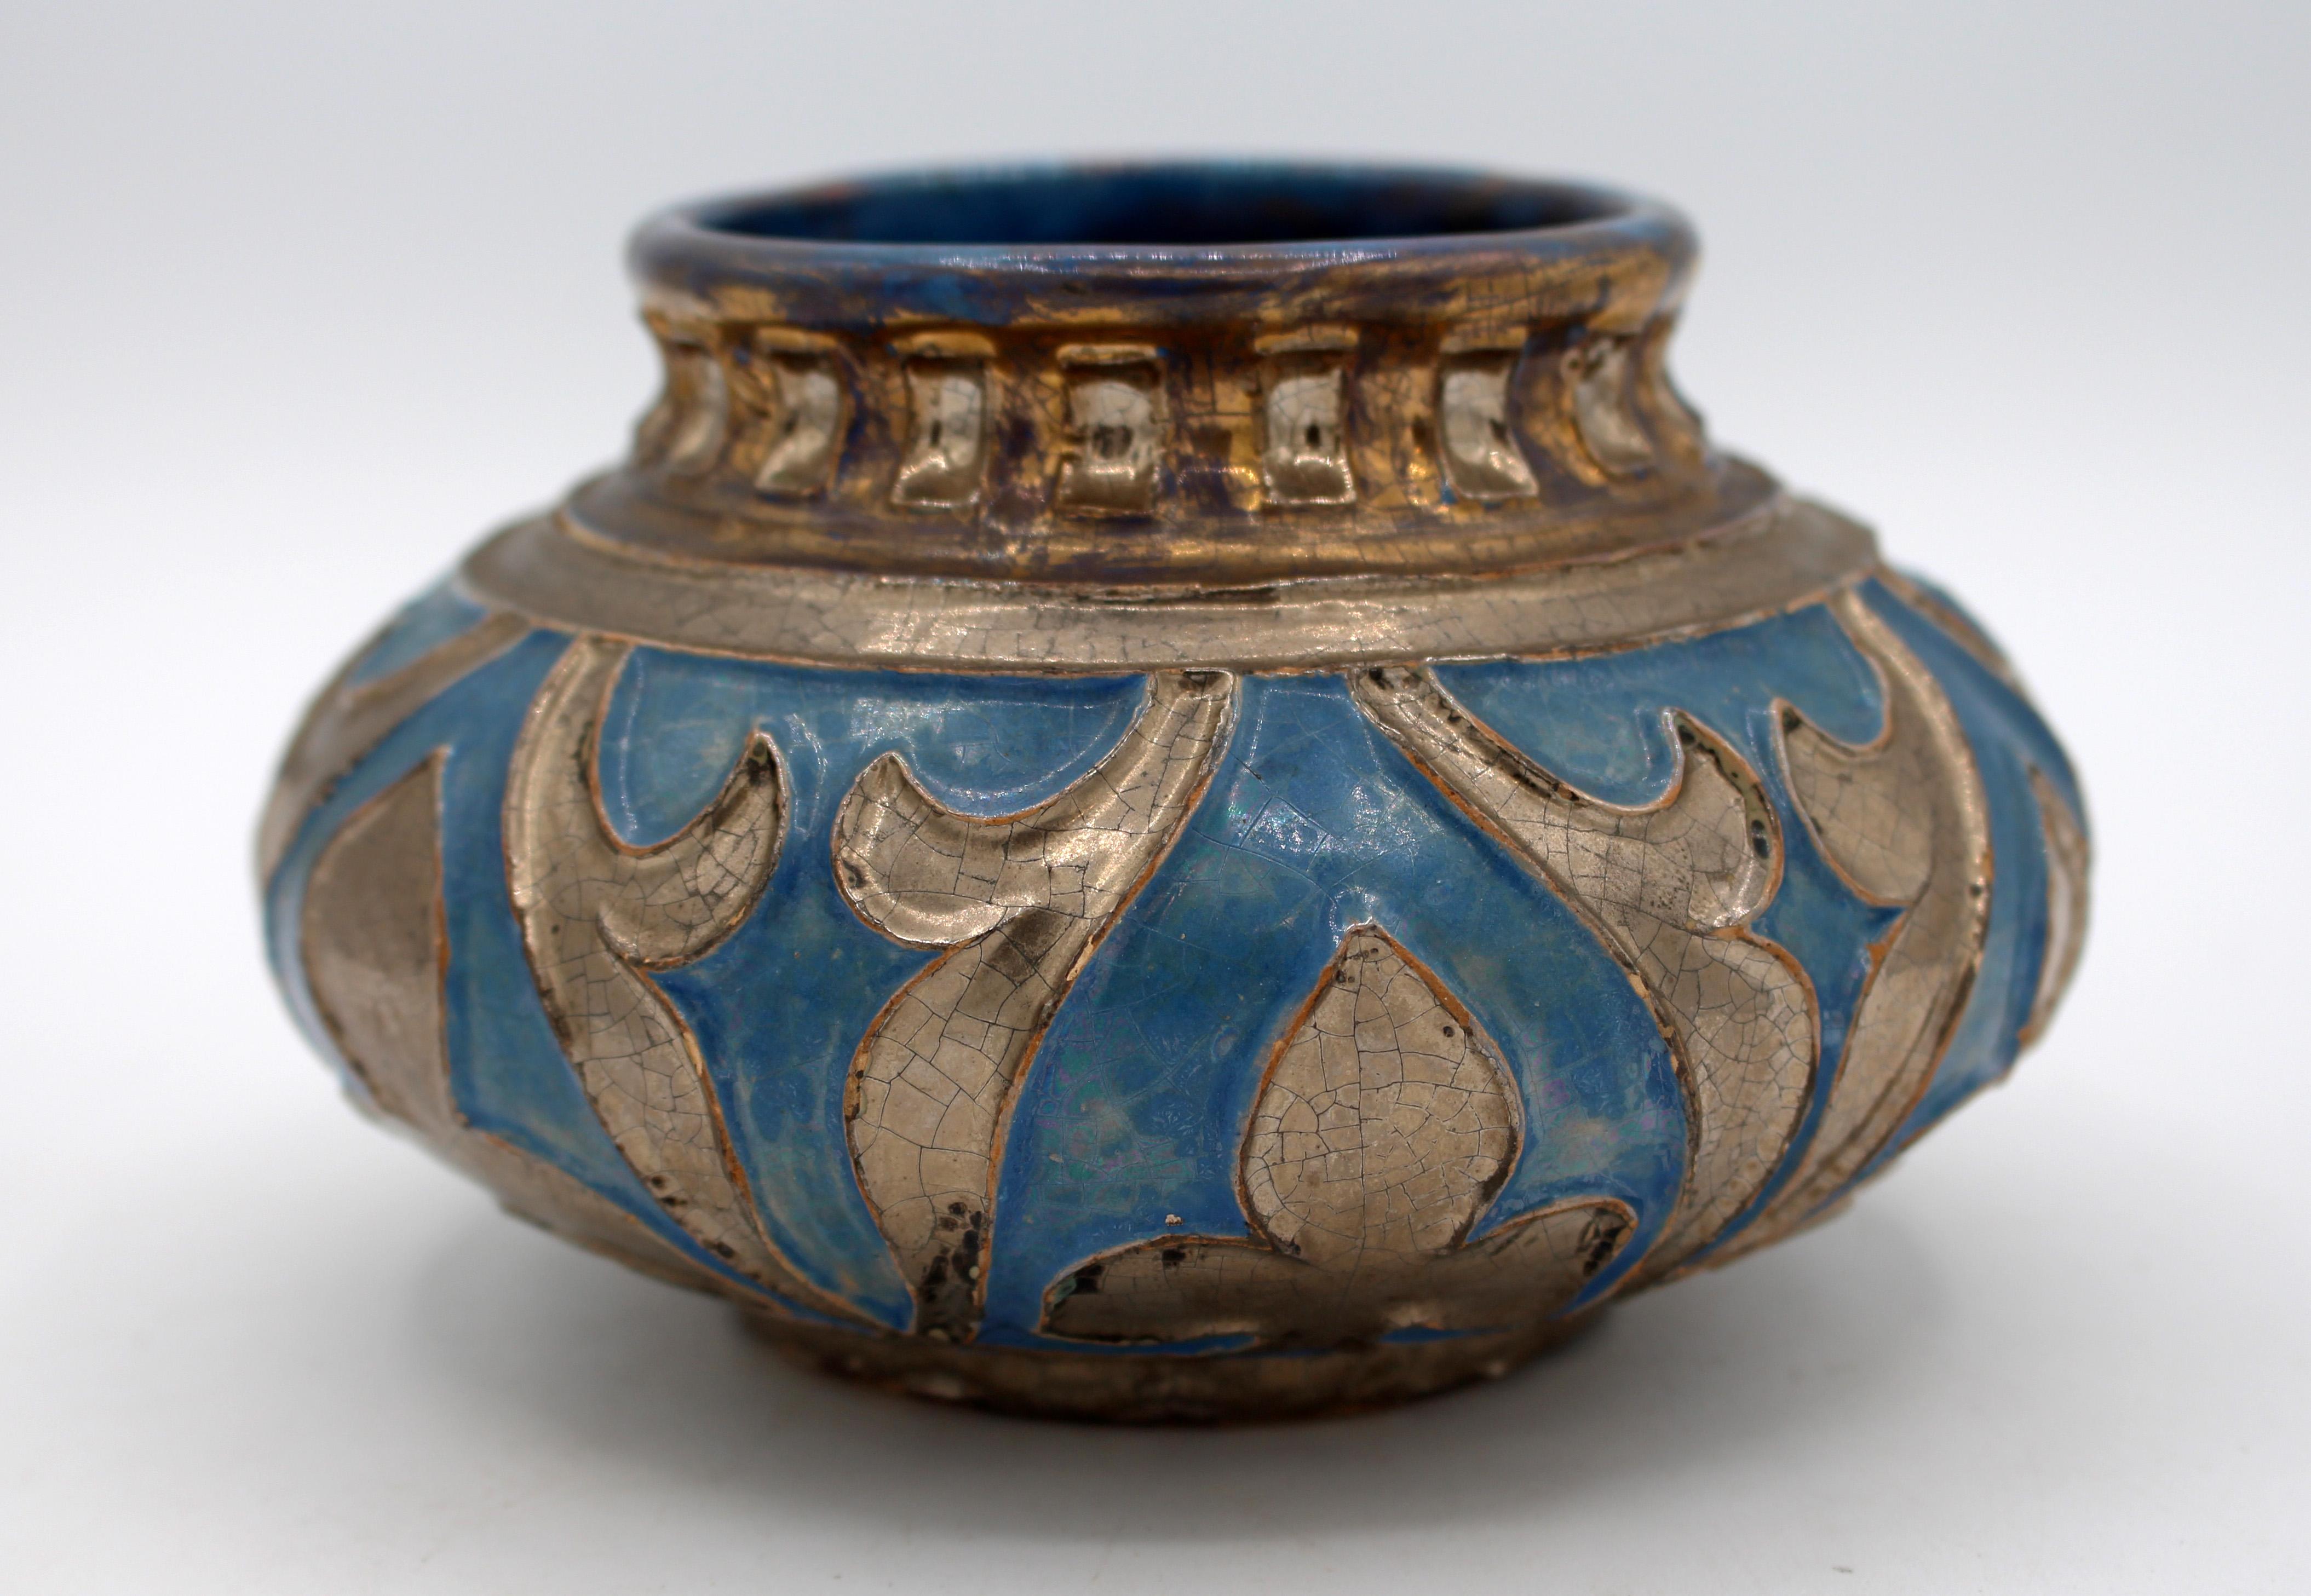 Vase ou bol bas en poterie, datant de 1920, de Daniel Zuloaga Boneta (Espagne, 1852-1921). L'un des plus grands céramistes espagnols et innovateur dans le domaine de la poterie d'art. Il a utilisé des motifs et des techniques traditionnels de la